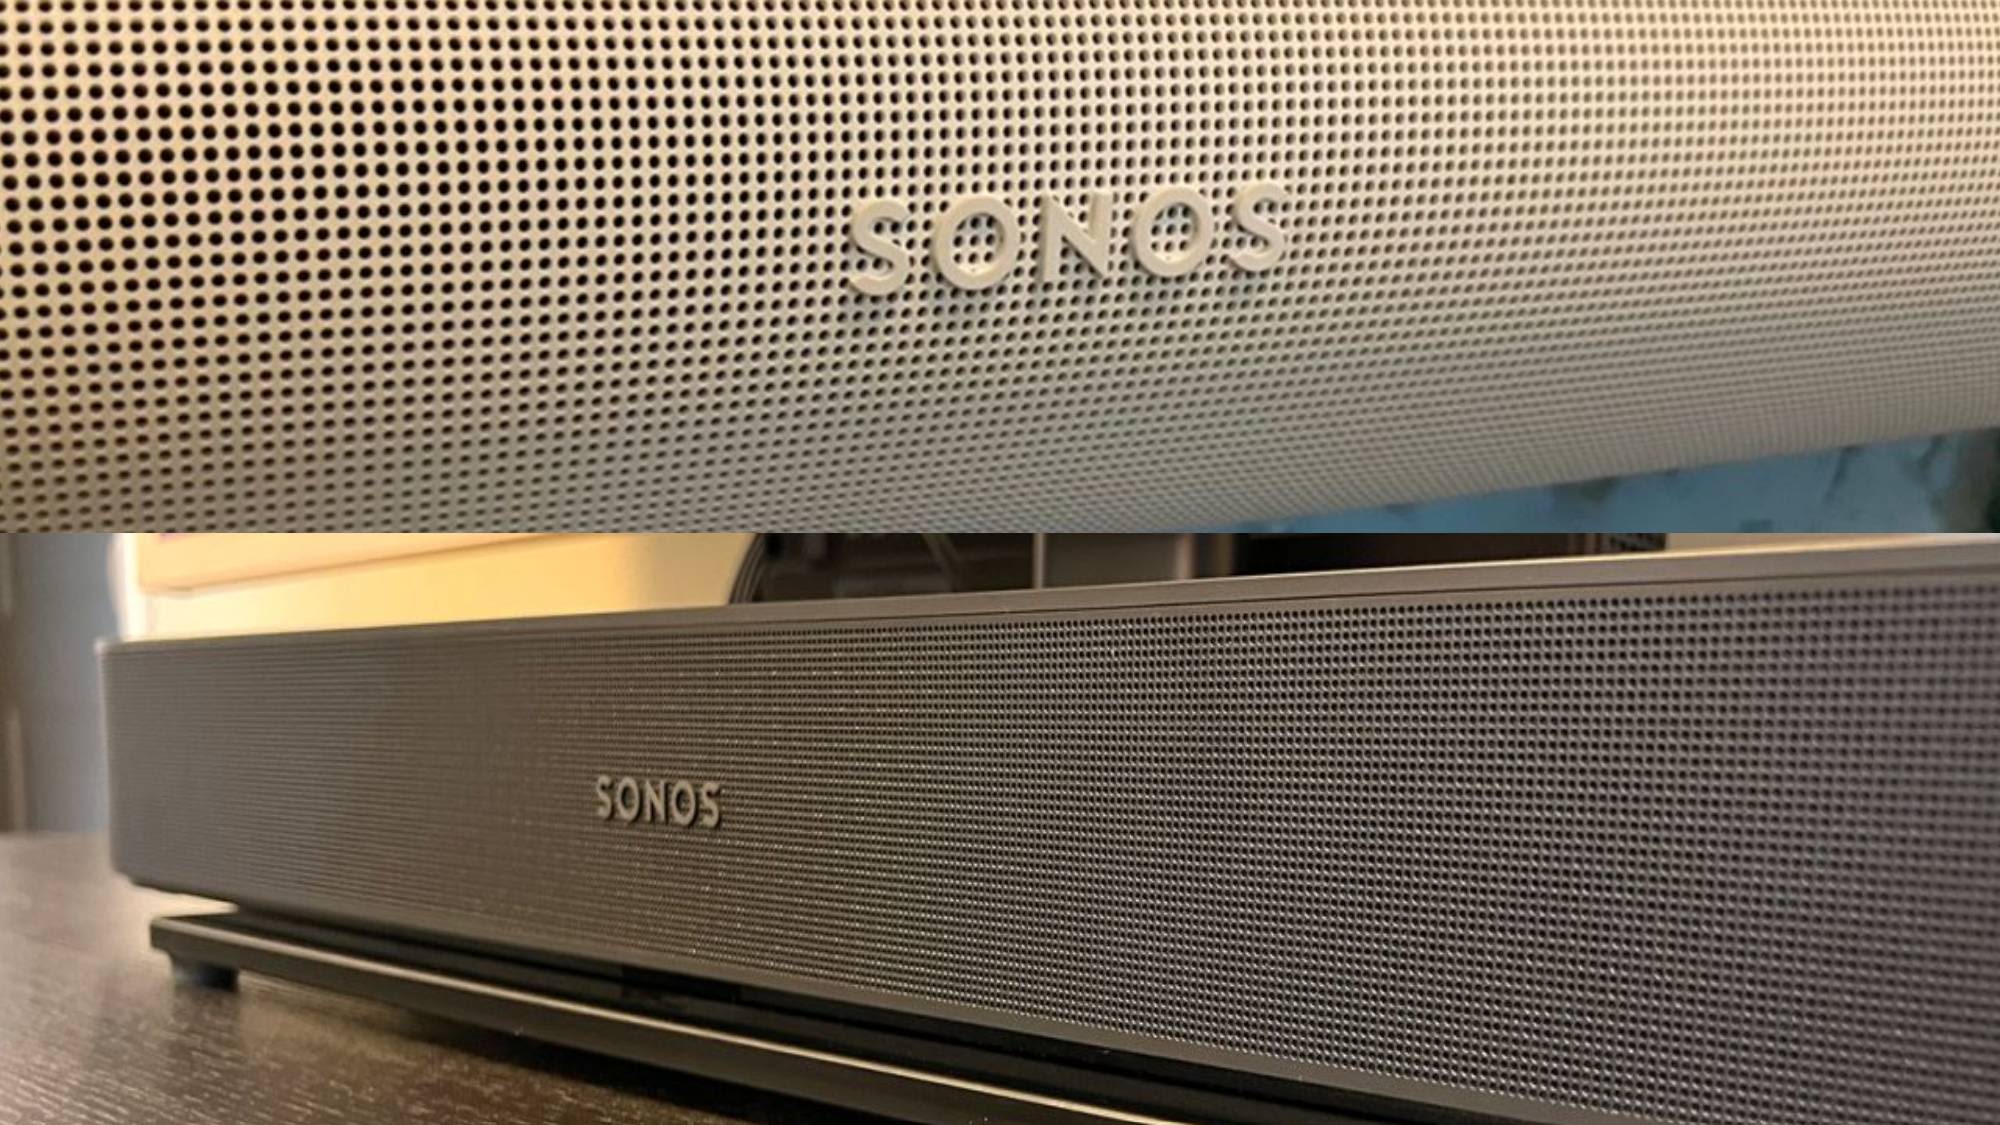 Sonos Beam Gen 2 vs Sonos Arc: which Sonos bar is best? - Reviewed